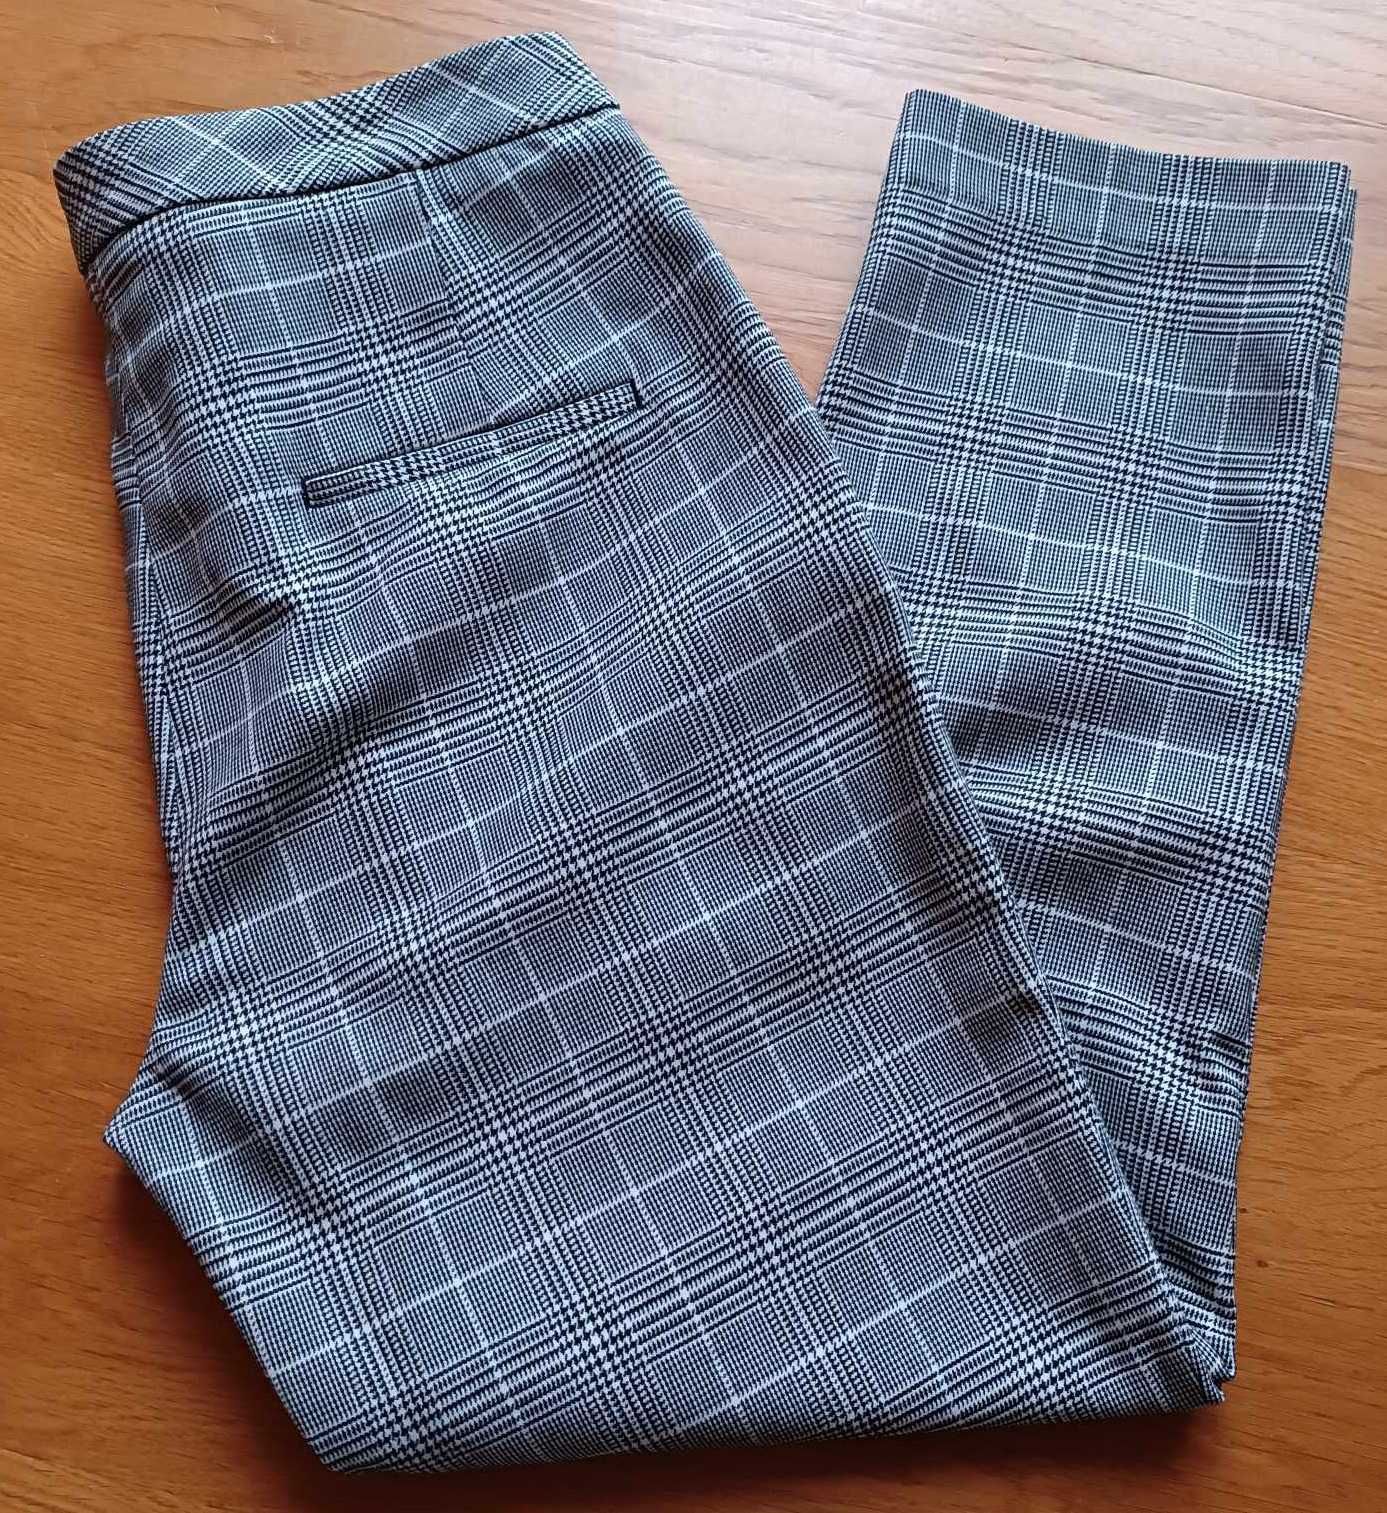 Spodnie damskie w elegancką kratkę., H&M, rozmiar 38/M